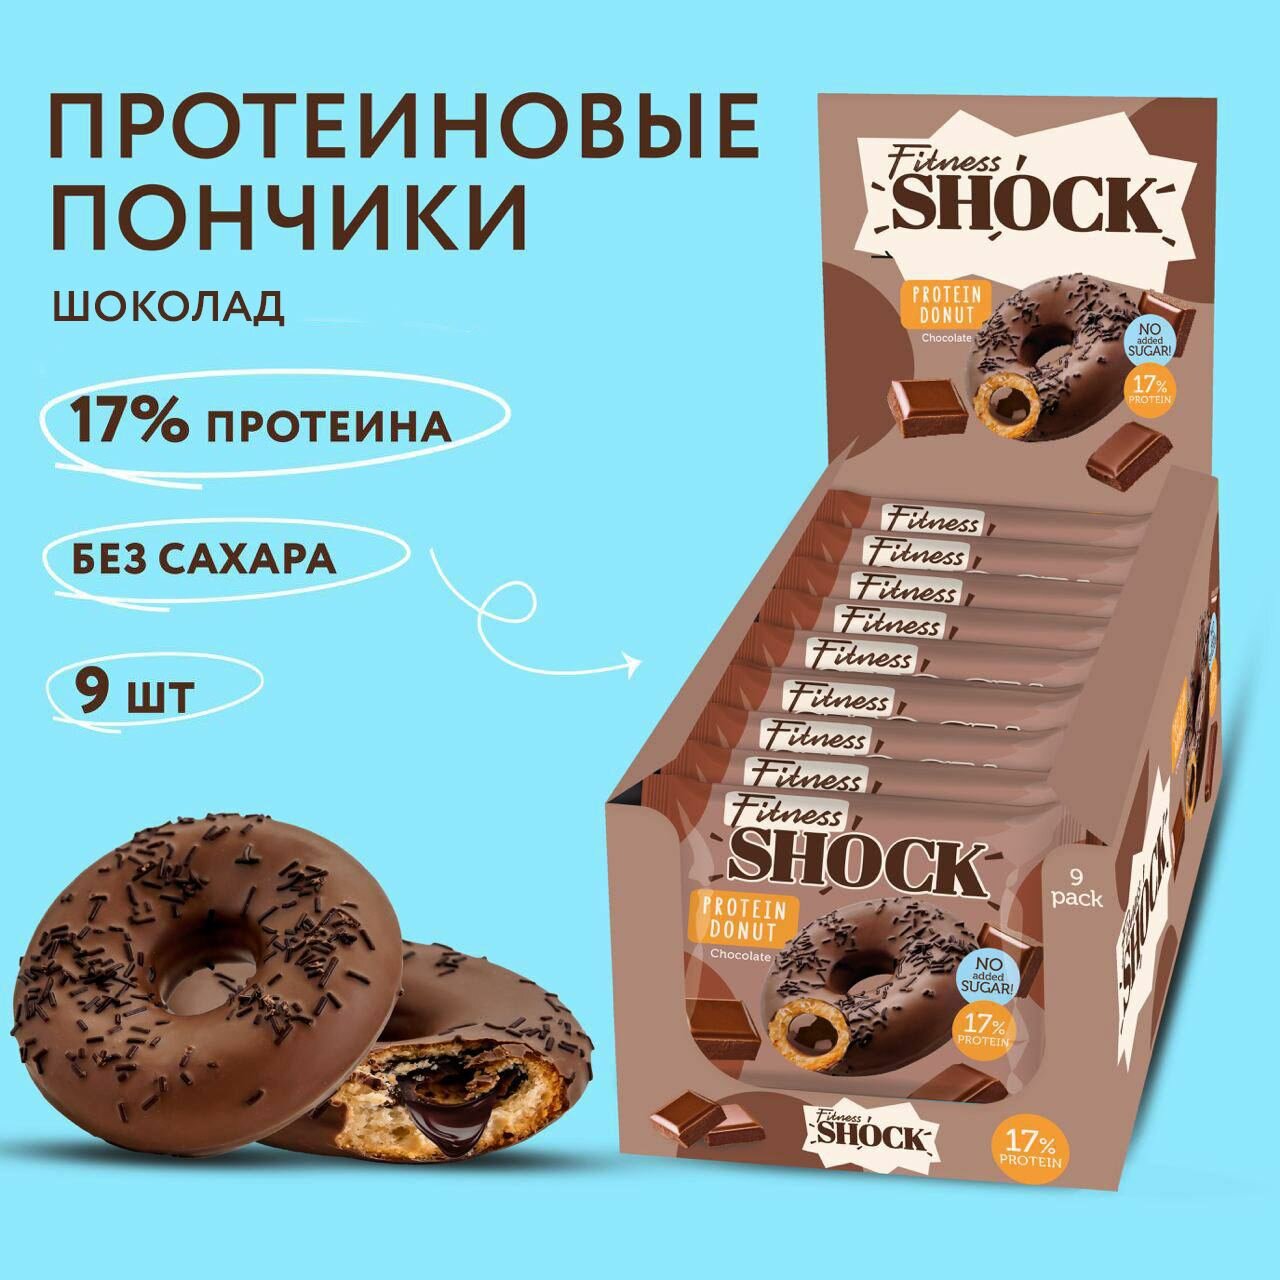 Протеиновые пончики без сахара Шоколад FitnesSHOCK 9 шт